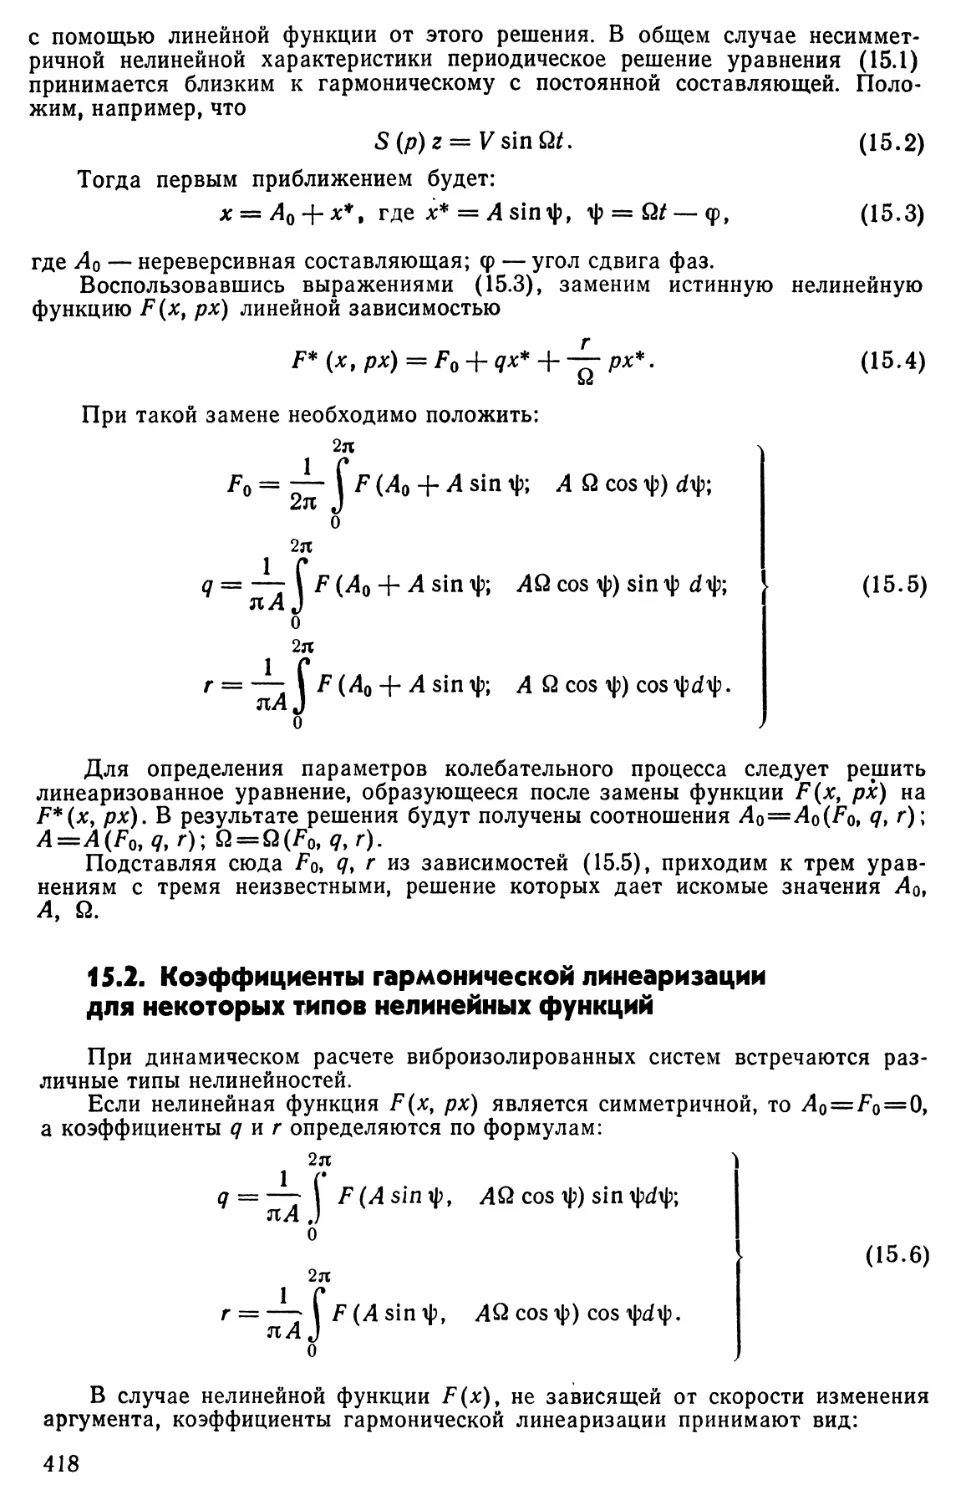 15.2. Коэффициенты гармонической линеаризации для некоторых типов нелинейных функций